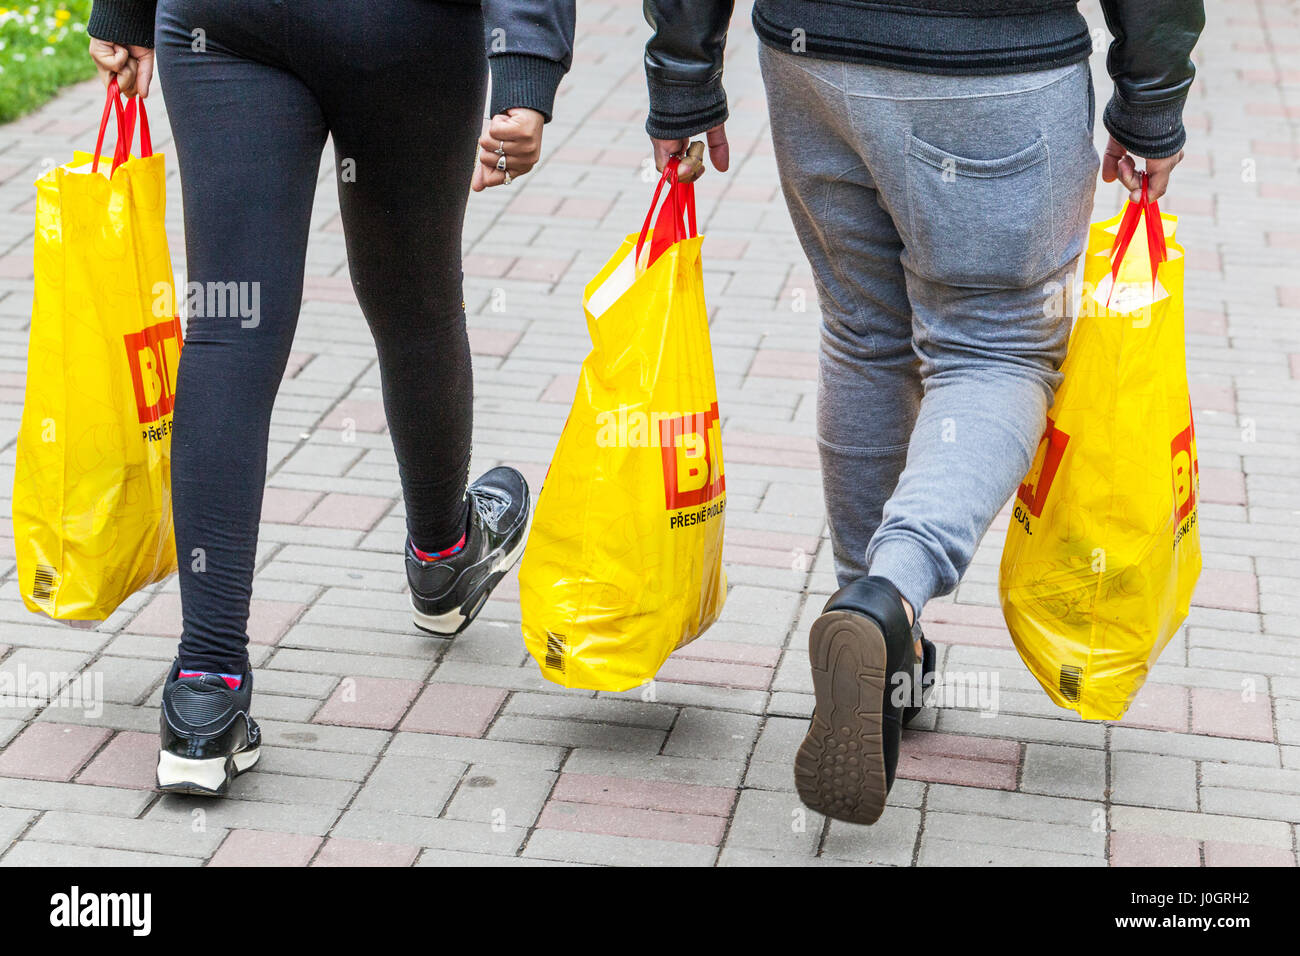 Clients ayant des marchandises achetées dans un supermarché, des marchandises remplies dans des sacs en plastique, vue arrière Banque D'Images